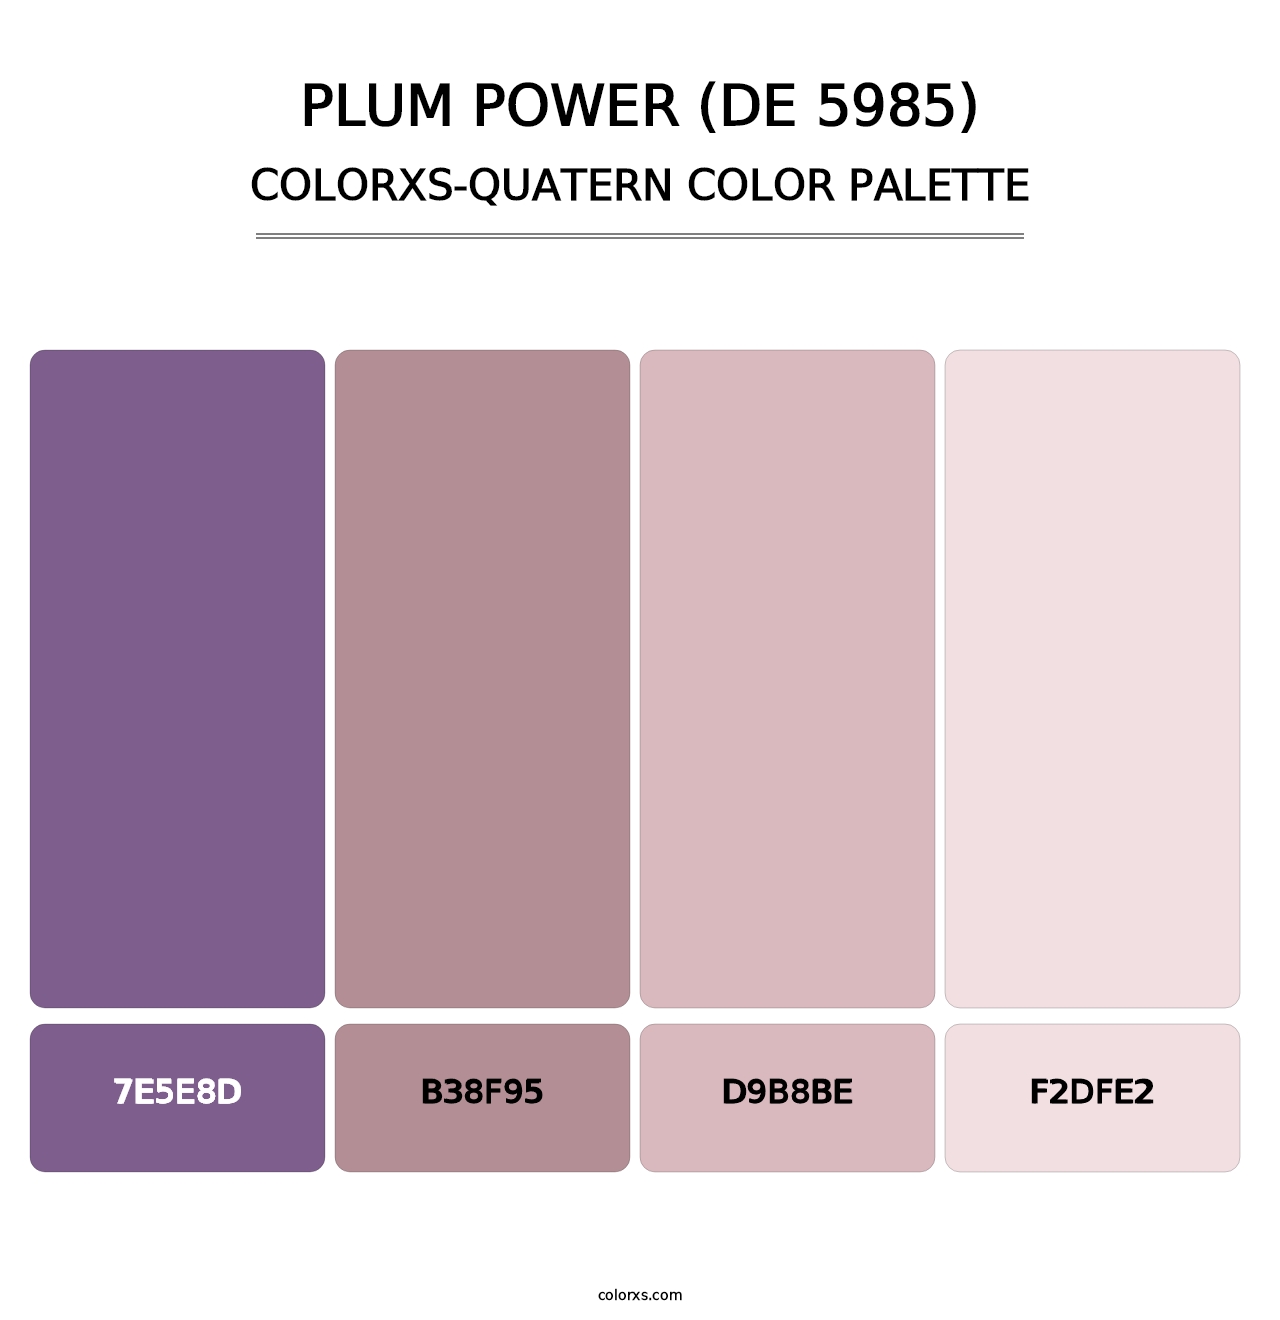 Plum Power (DE 5985) - Colorxs Quatern Palette